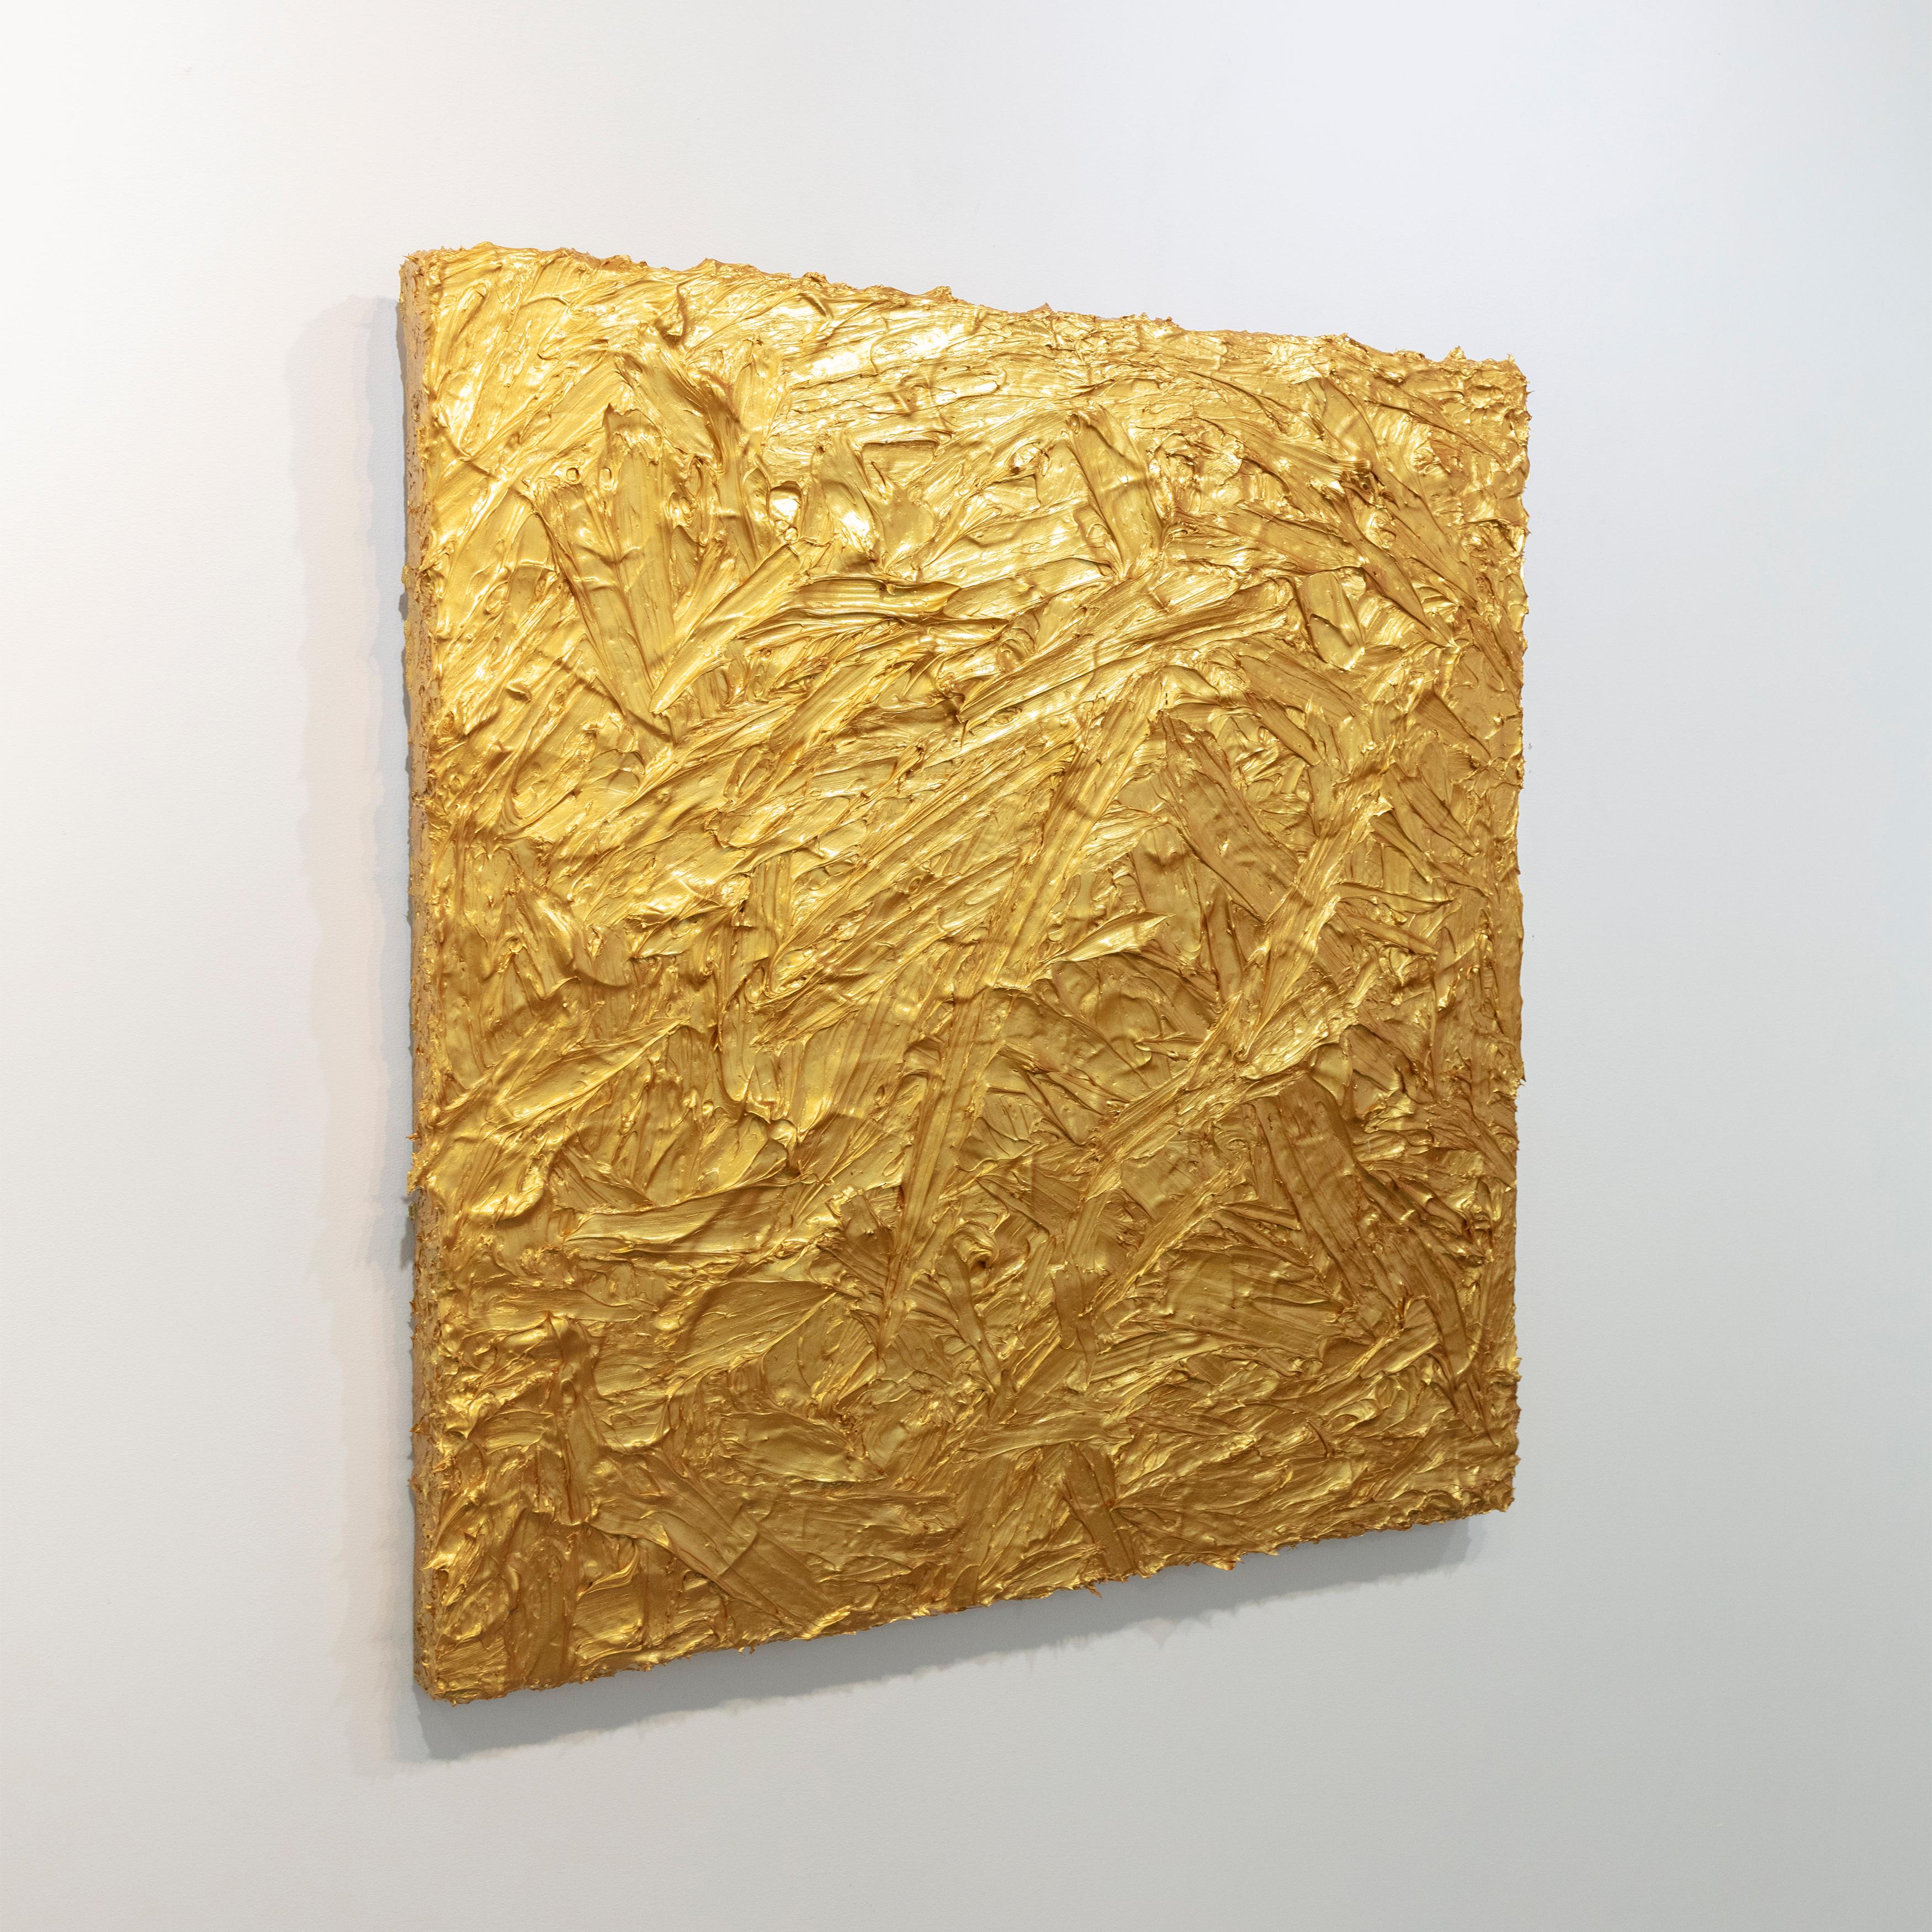 Cette peinture abstraite de Teodora Guererra présente une palette d'or métallique. La peinture est appliquée en couches épaisses sur la toile, par petites touches rapides, créant ainsi une surface très texturée. Elle est câblée et prête à être